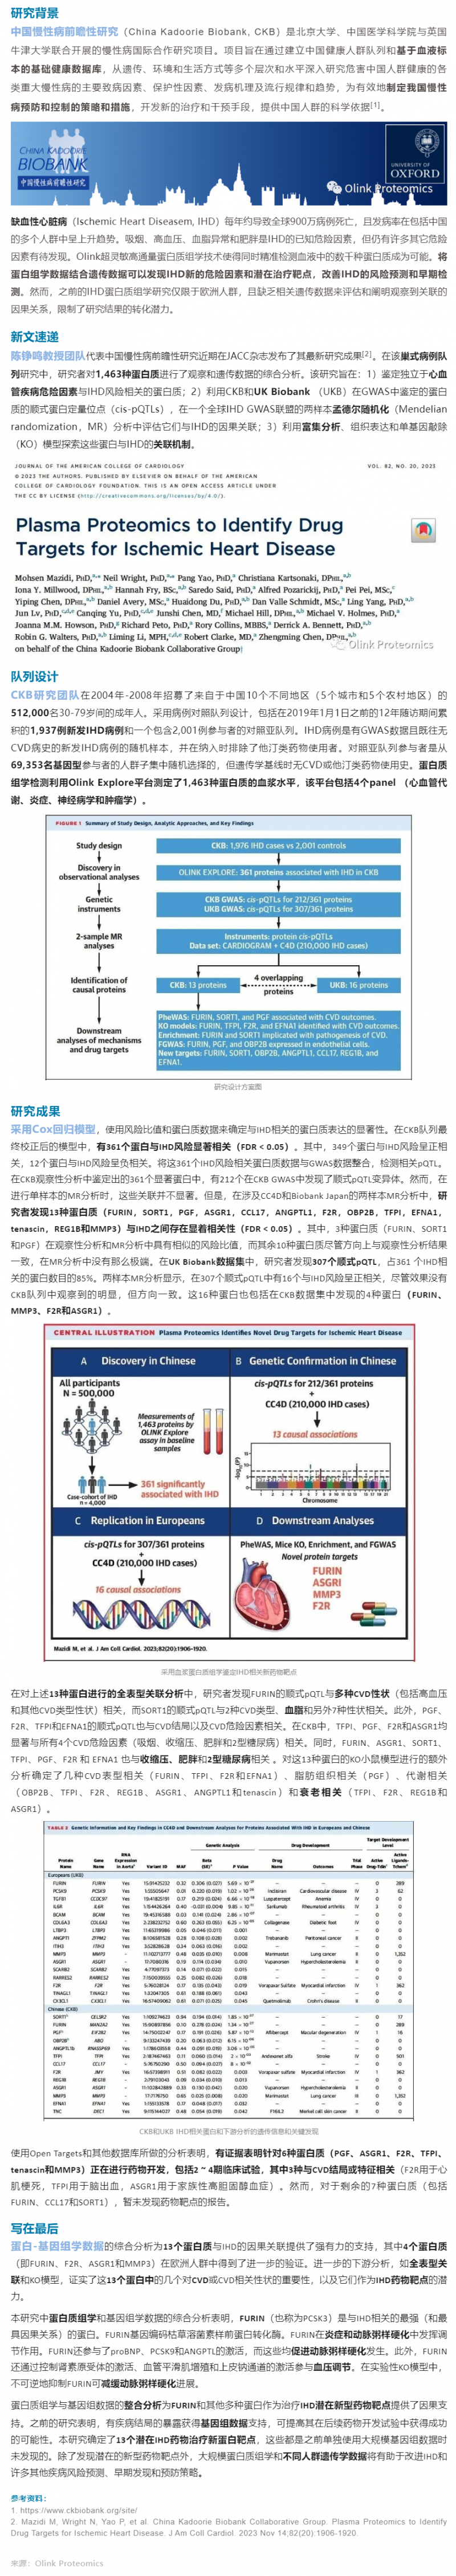 中国慢性病前瞻性研究 |Olink 蛋白质组助力发现缺血性心脏病新药靶